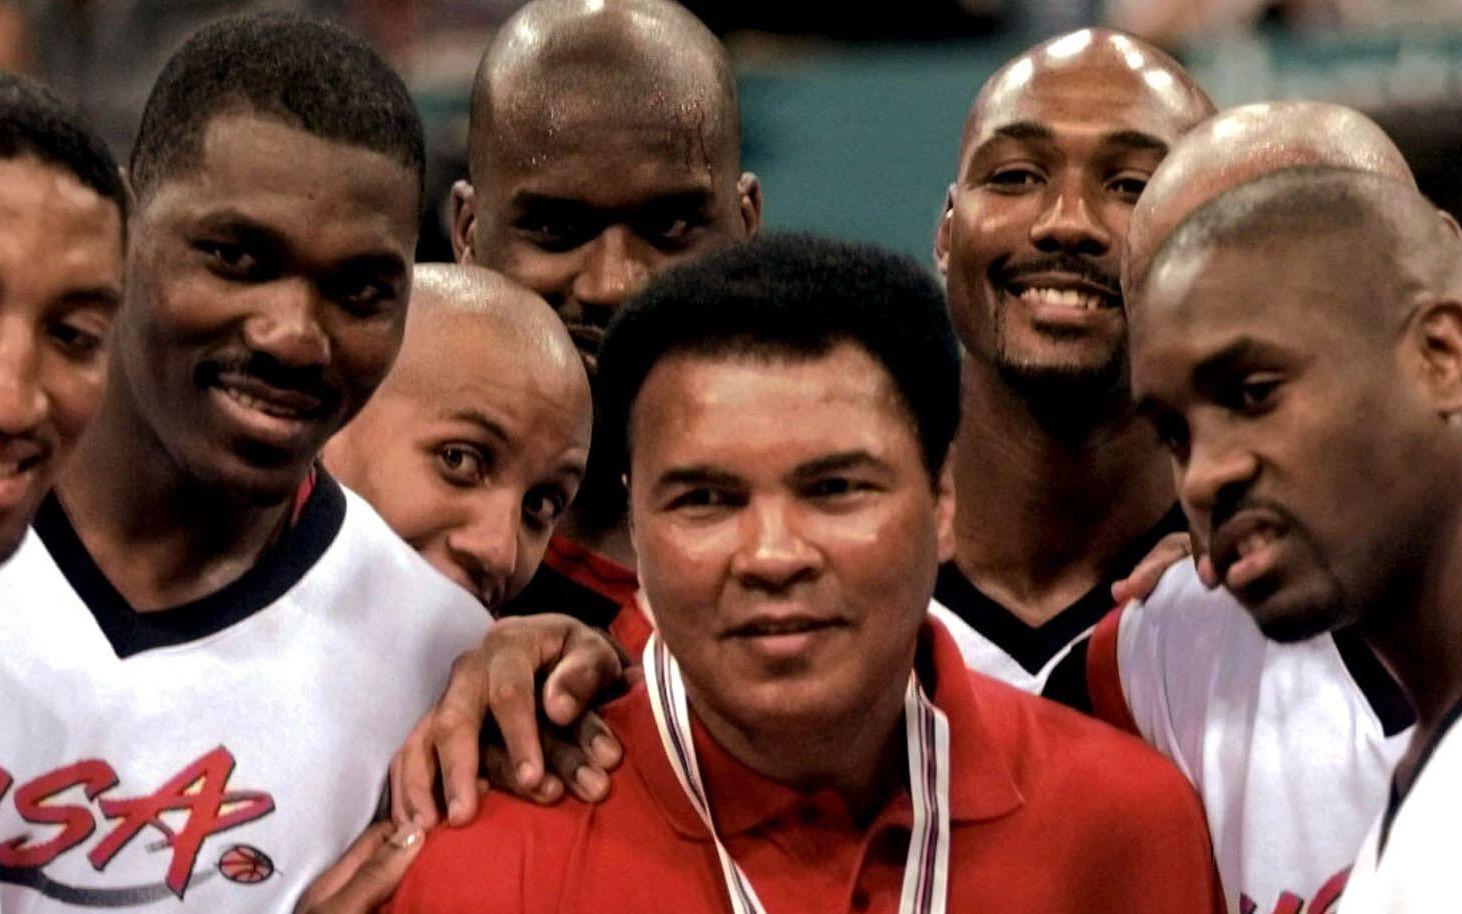 1996-upplagan av Dream Team, från vänster: Scottie Pippen, Hakeem Olajuwon, Reggie Miller, Shaquille O'Neal, Karl Malone and Gary Payton. Här tillsammans med Muhammad Ali. Foto: TT